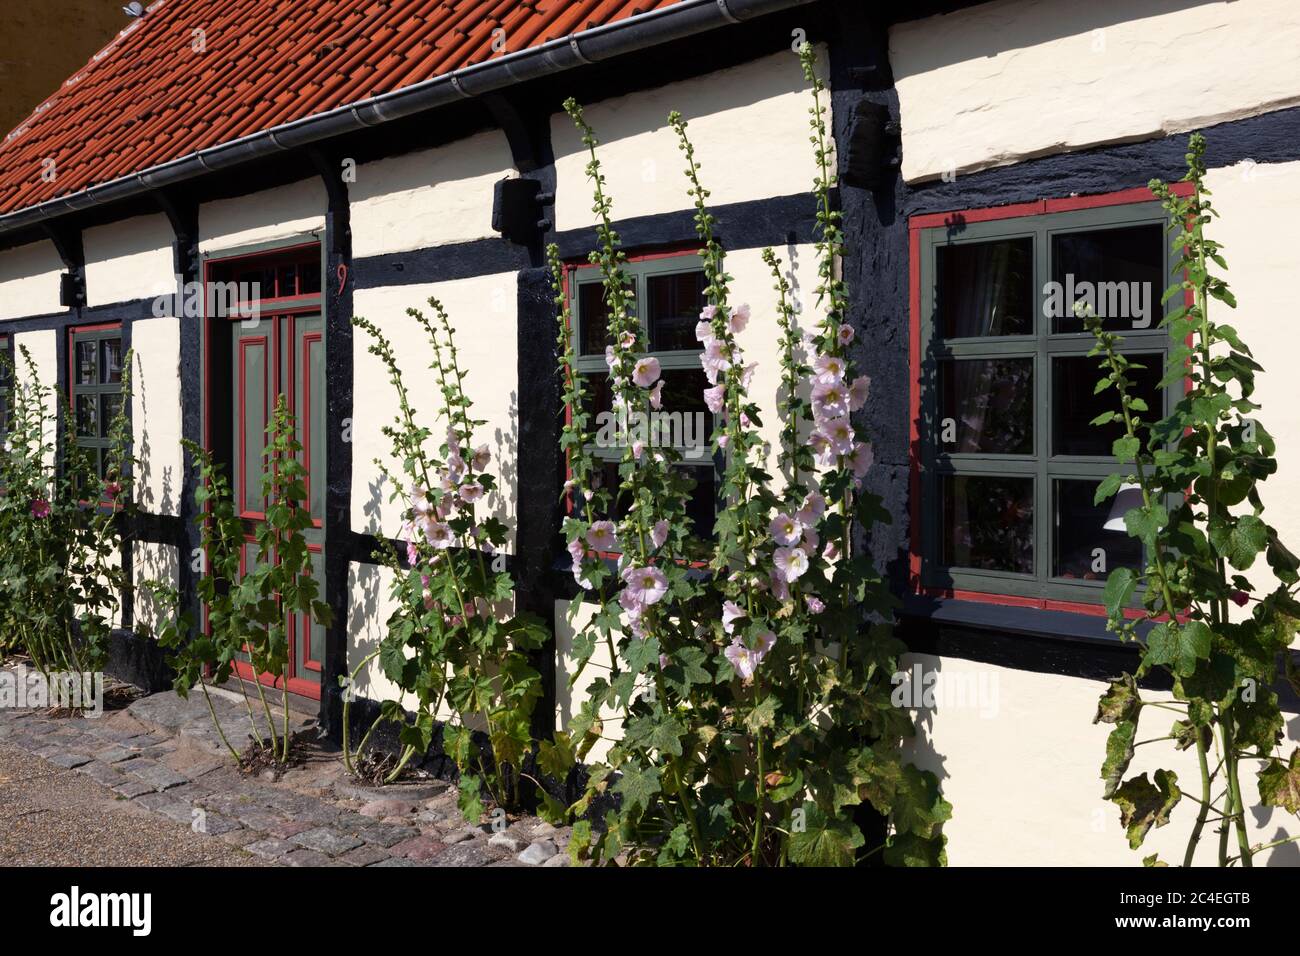 Il est situé à l'extérieur d'un cottage danois typique à colombages, le long d'Algade, Saeby, Jutland, Danemark, Europe Banque D'Images